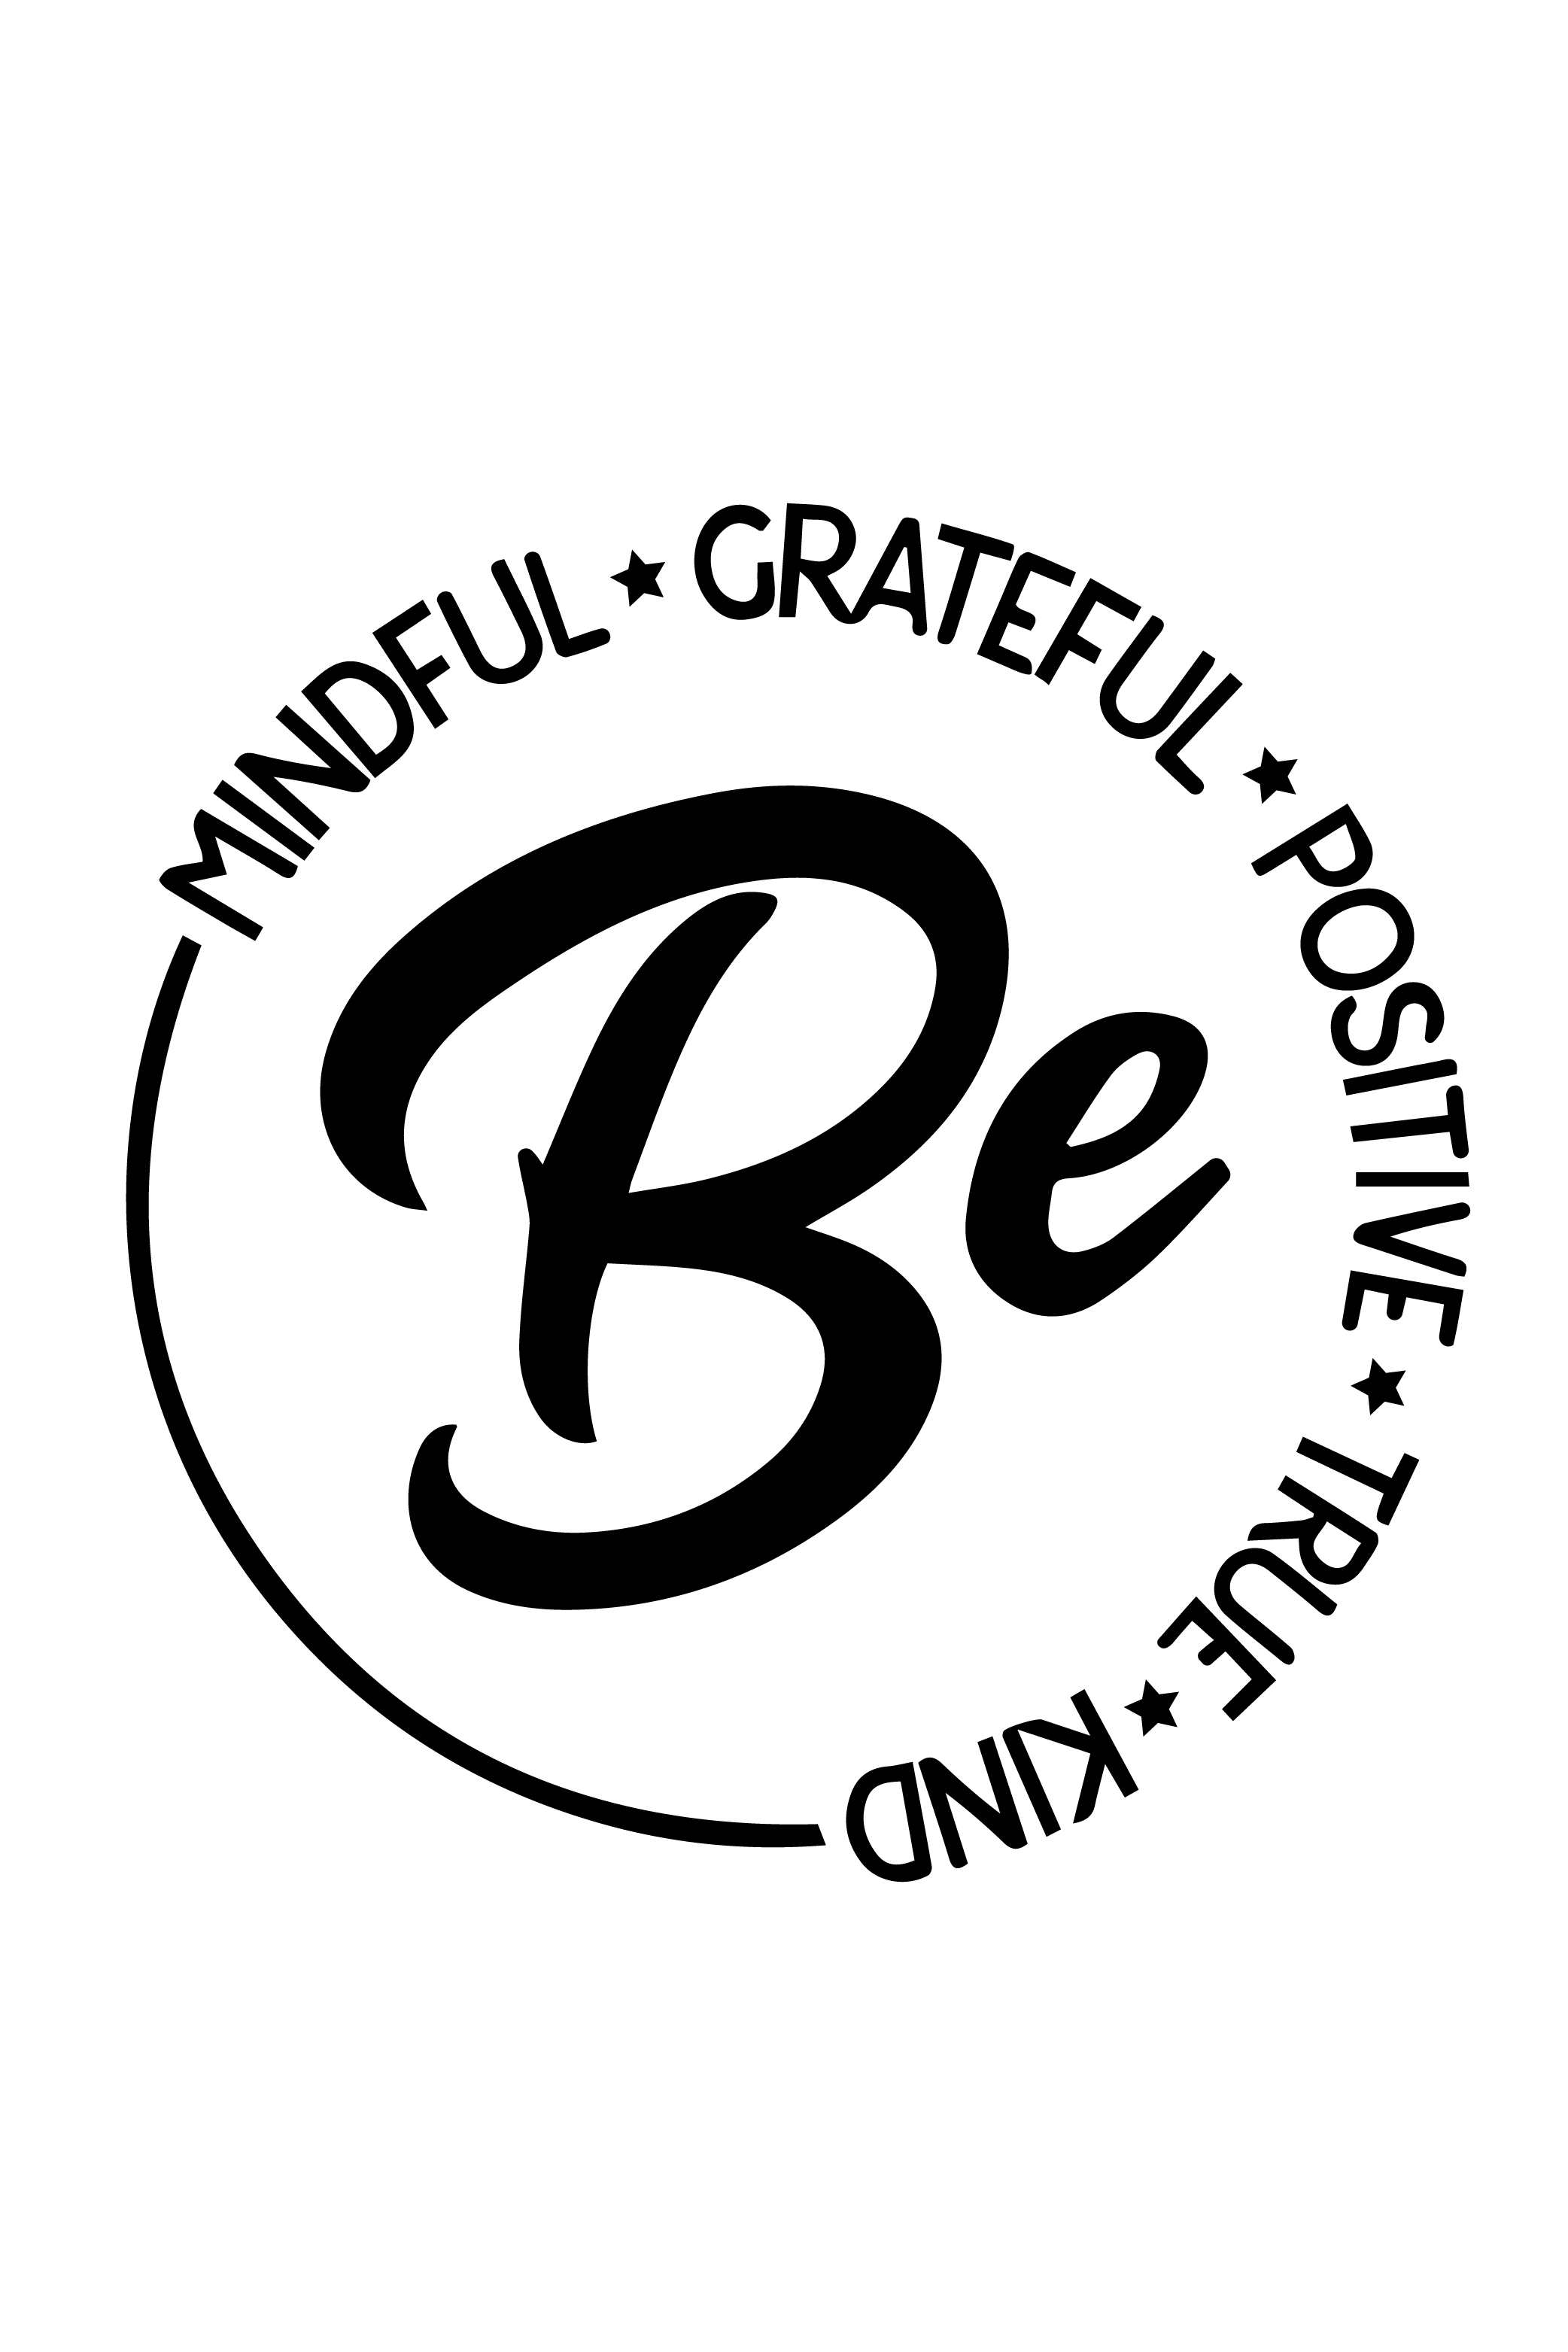 BE Mindful Grateful Positive True Kind - Design ( SVG - EPS - PNG =JPG ) Included pinterest preview image.